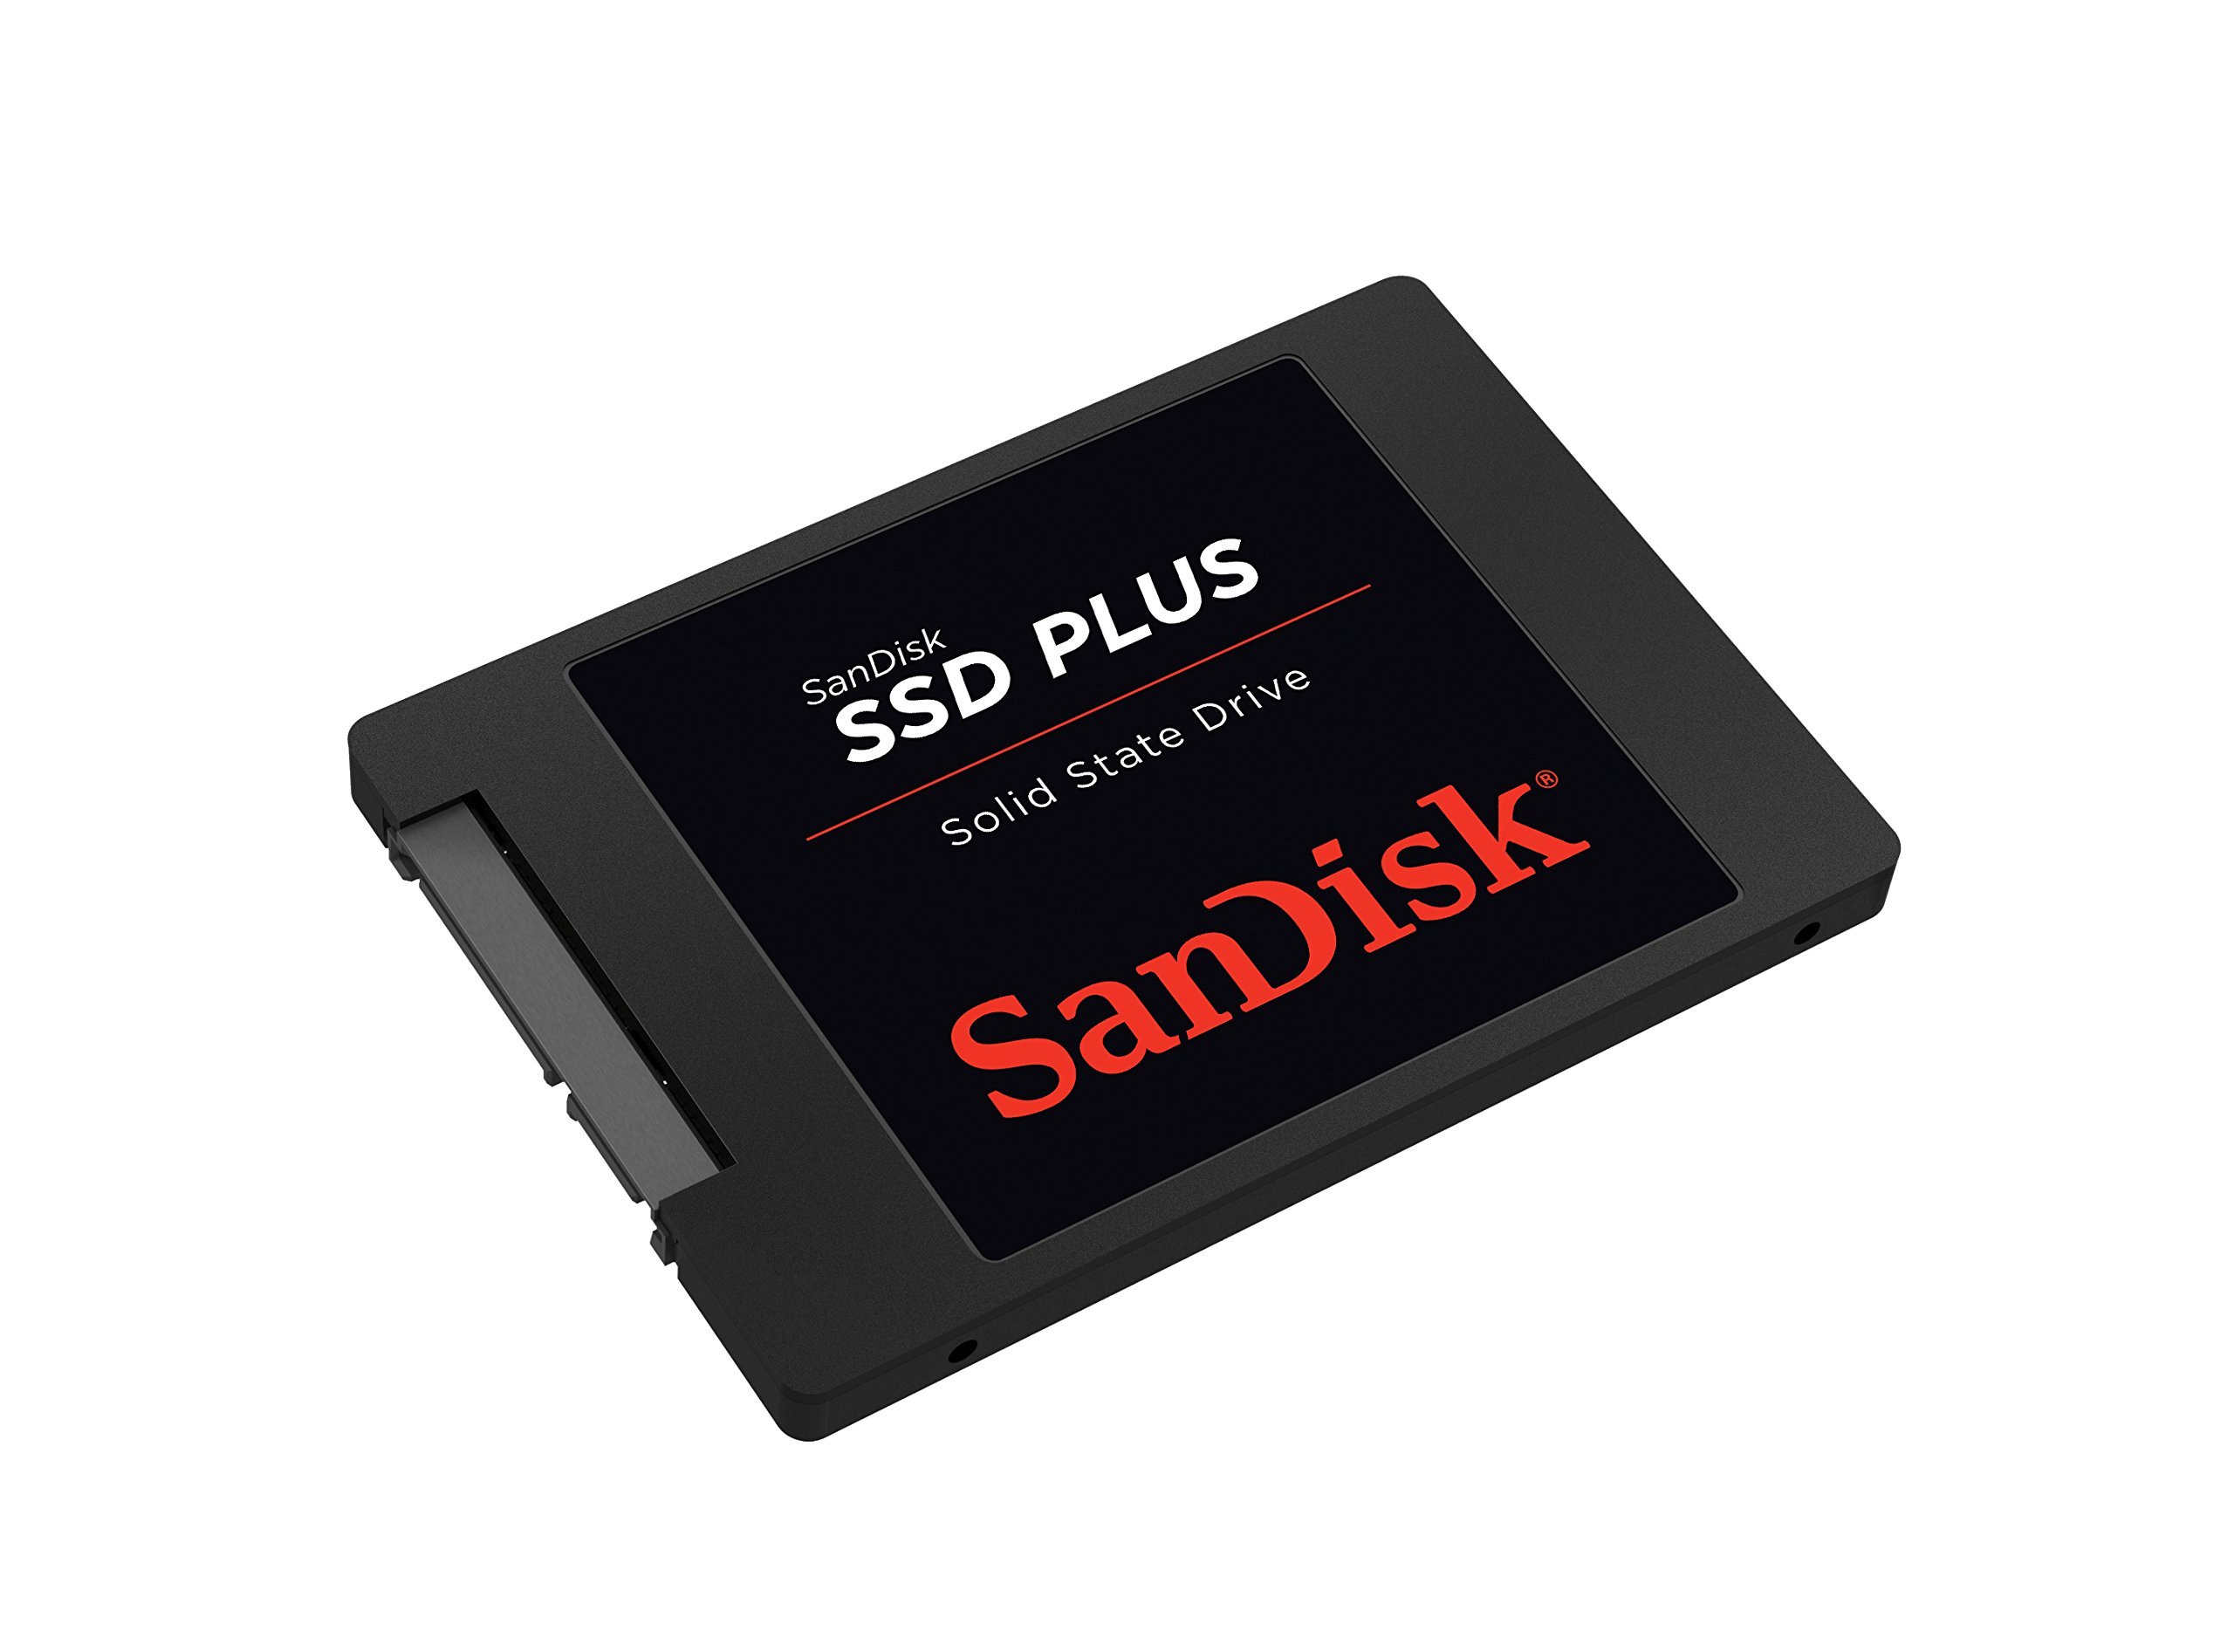 SanDisk SSD PLUS 240GB Internal SSD - SATA III 6 Gb/s, 2.5